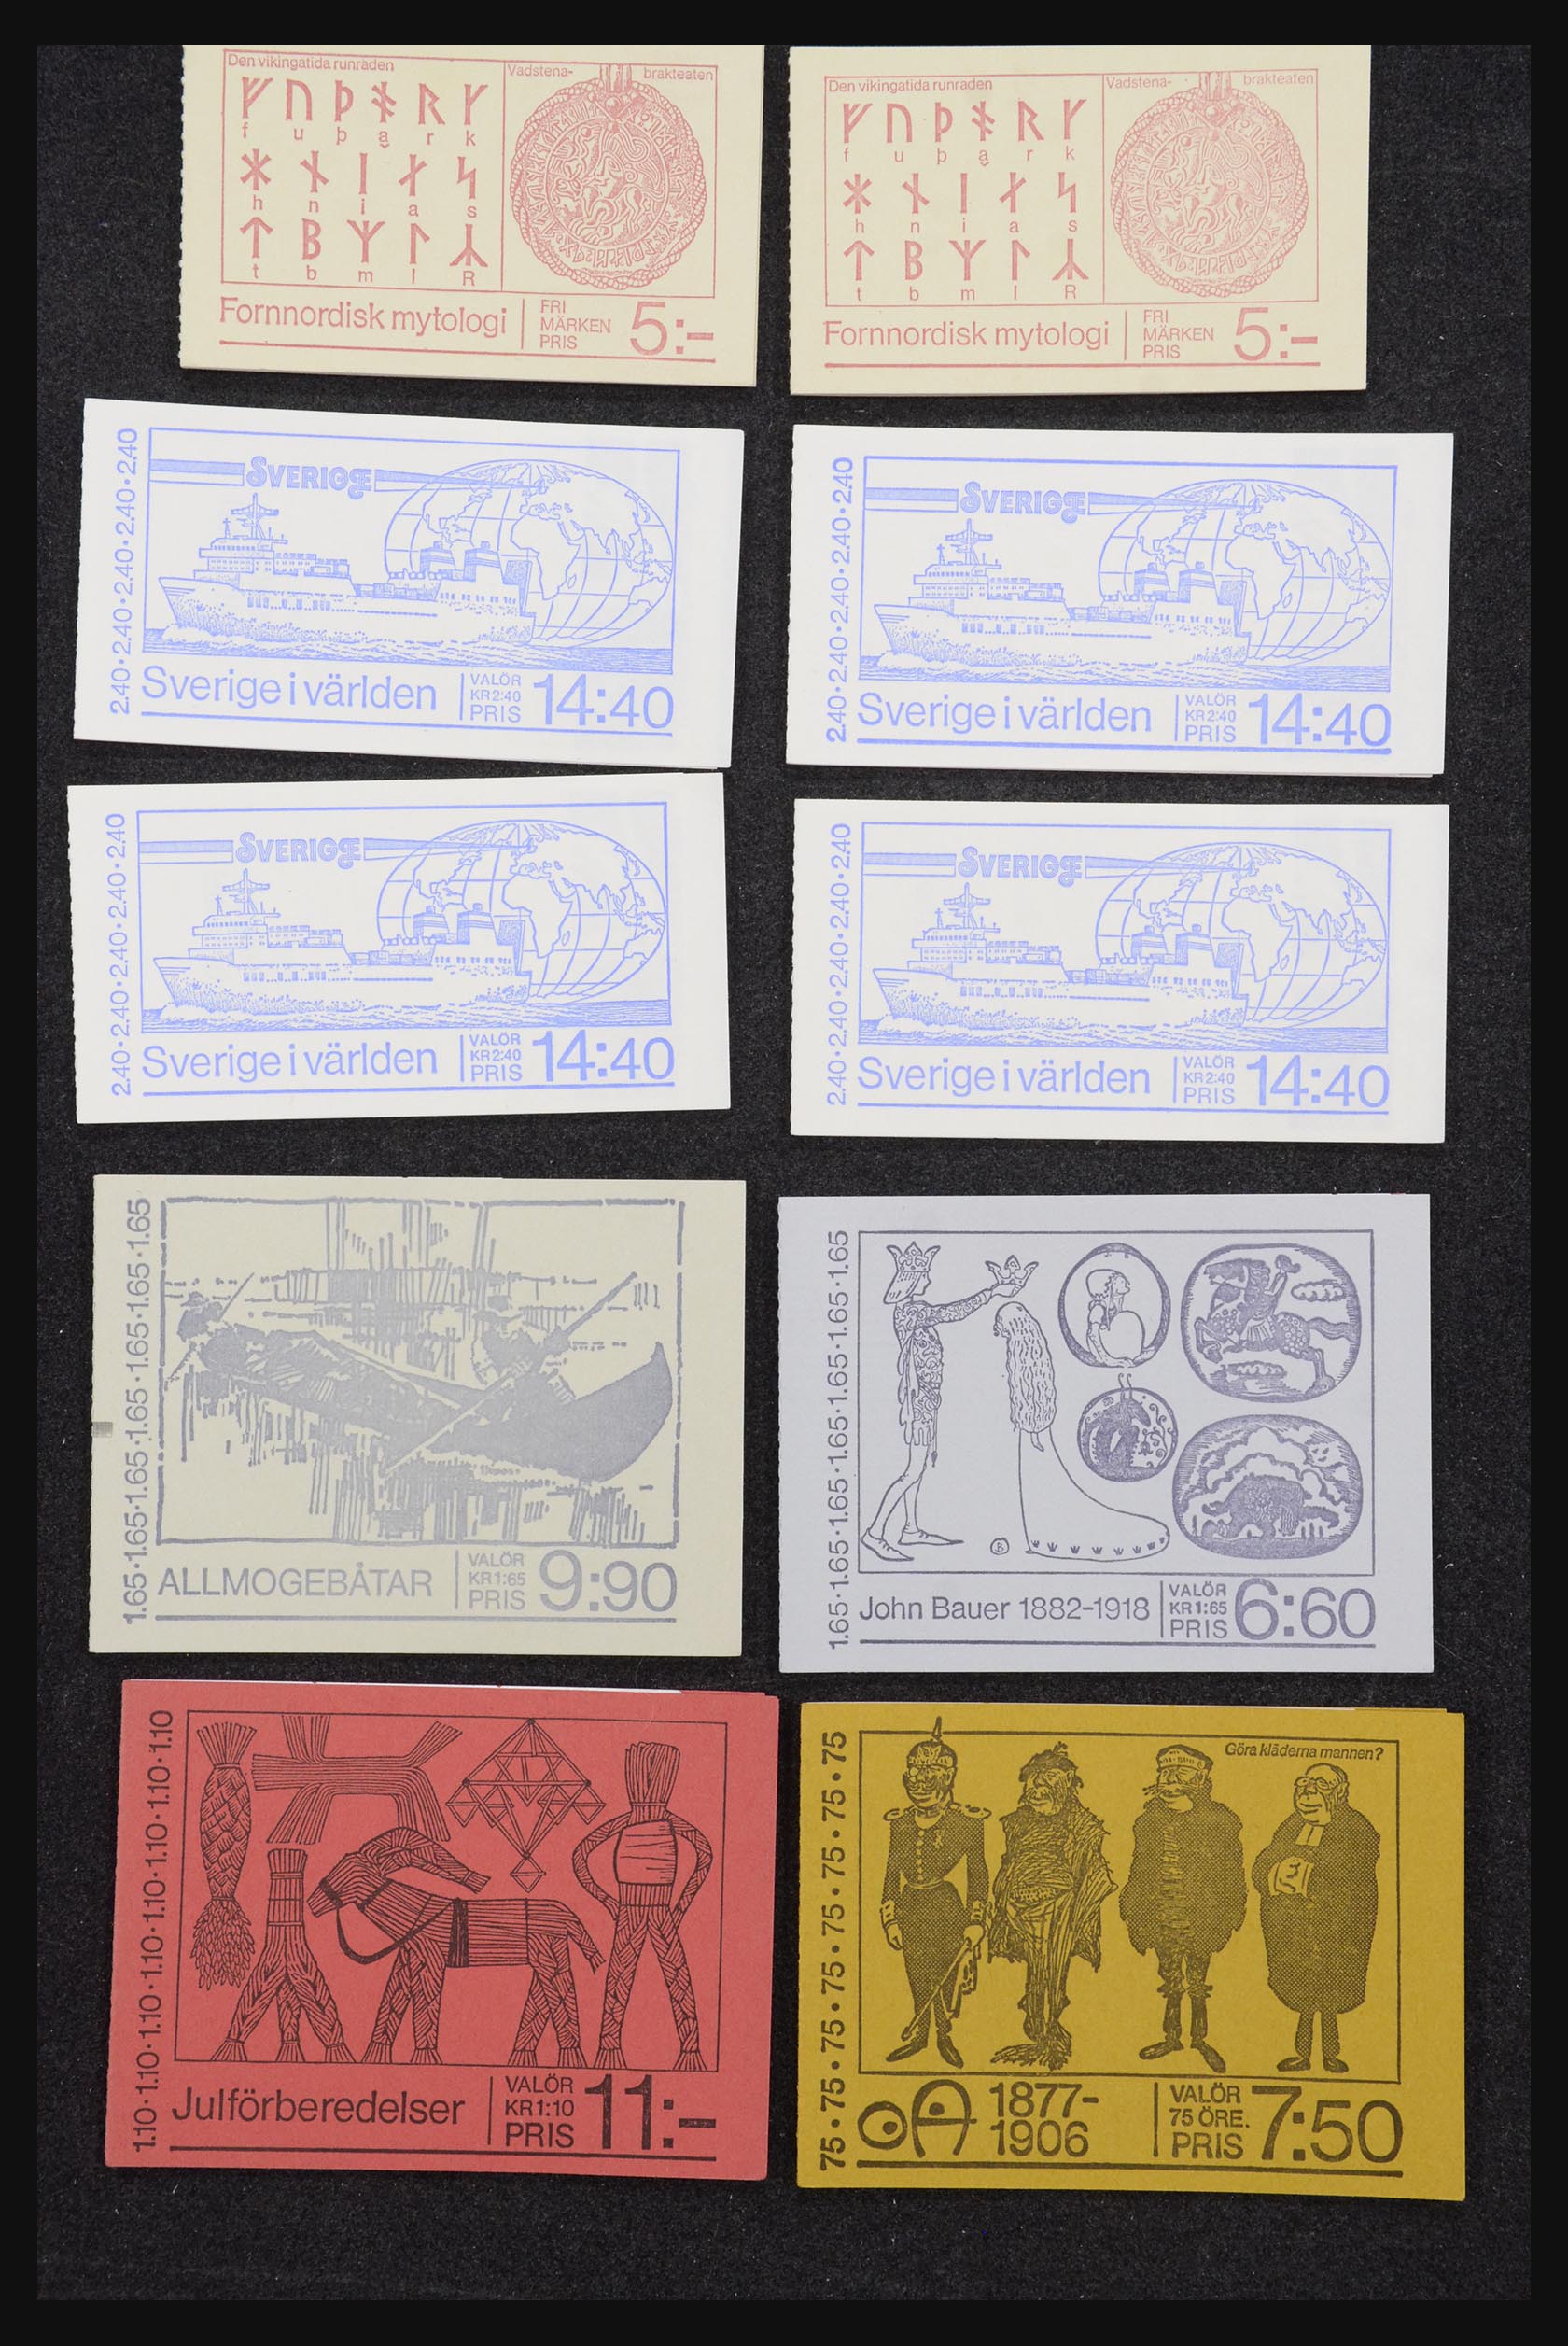 32026 068 - 32026 Sweden stampbooklets 1949-1990.